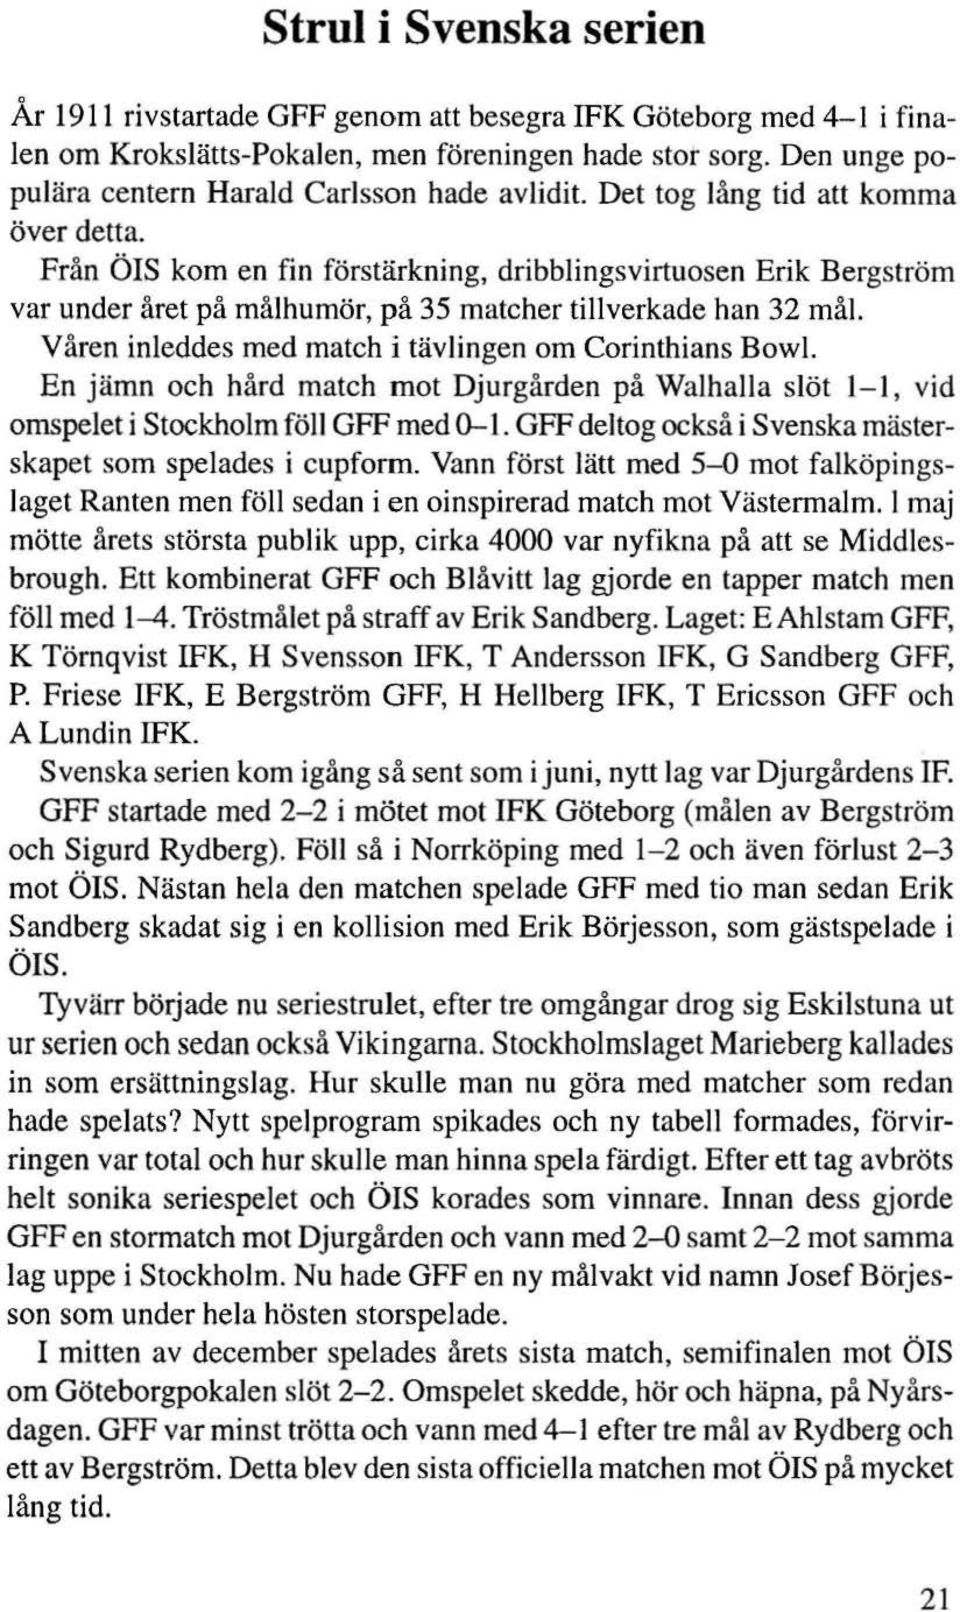 Från ÖIS kom en fin förstärkning, dribblingsvirtuosen Erik Bergström var under året på målhumör, på 35 matcher tillverkade han 32 mål Våren inleddes med match i tävlingen om Corinthians Bow1.